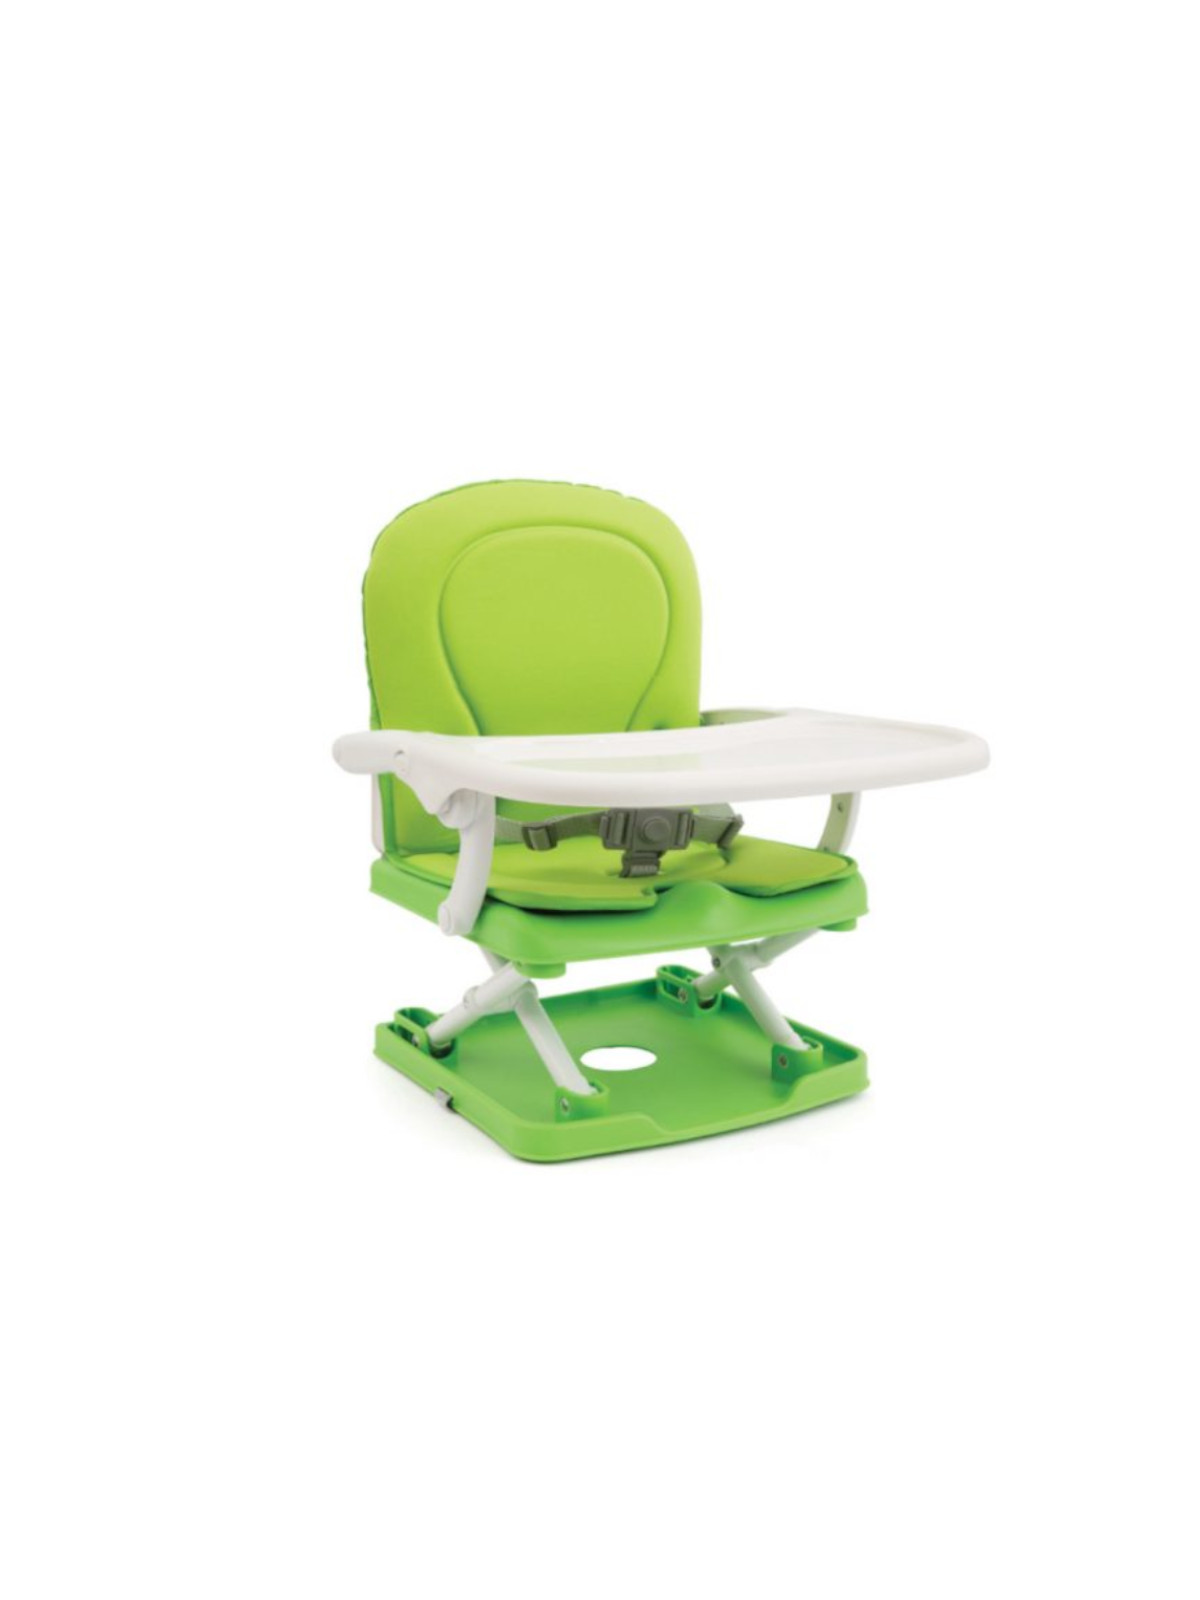 Rialzo sedia seat up green - Giordani